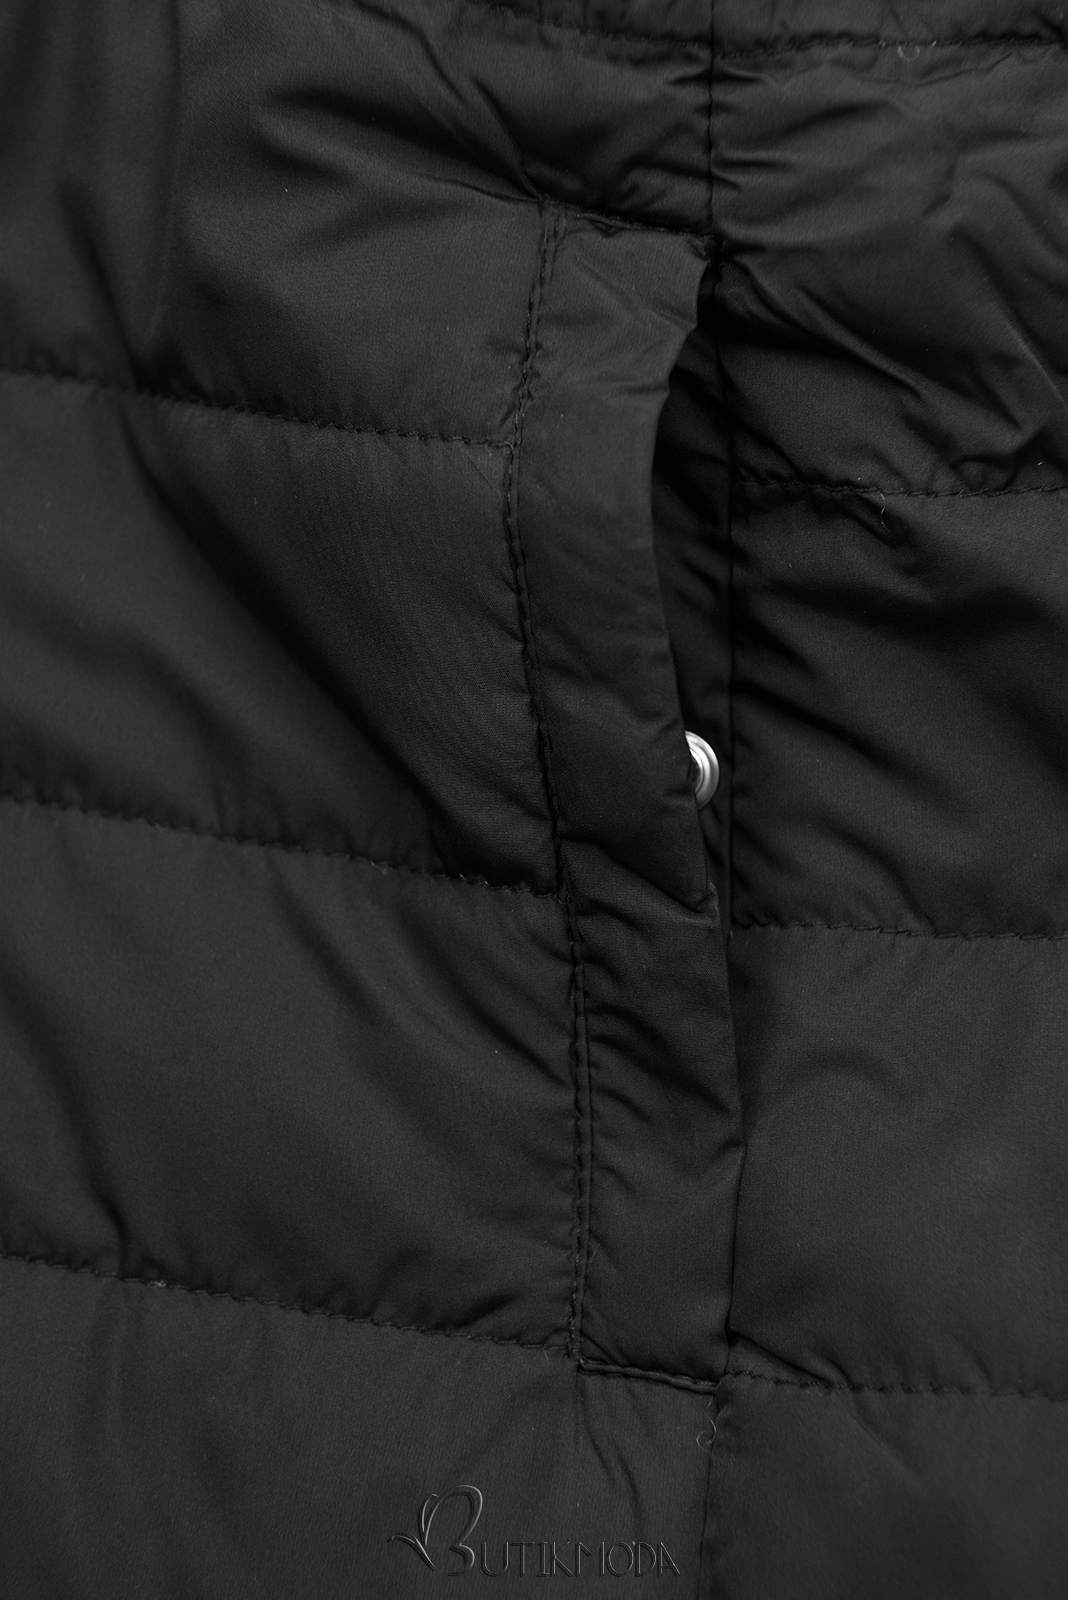 Kifordítható kabát behúzással - khaki és fekete színű